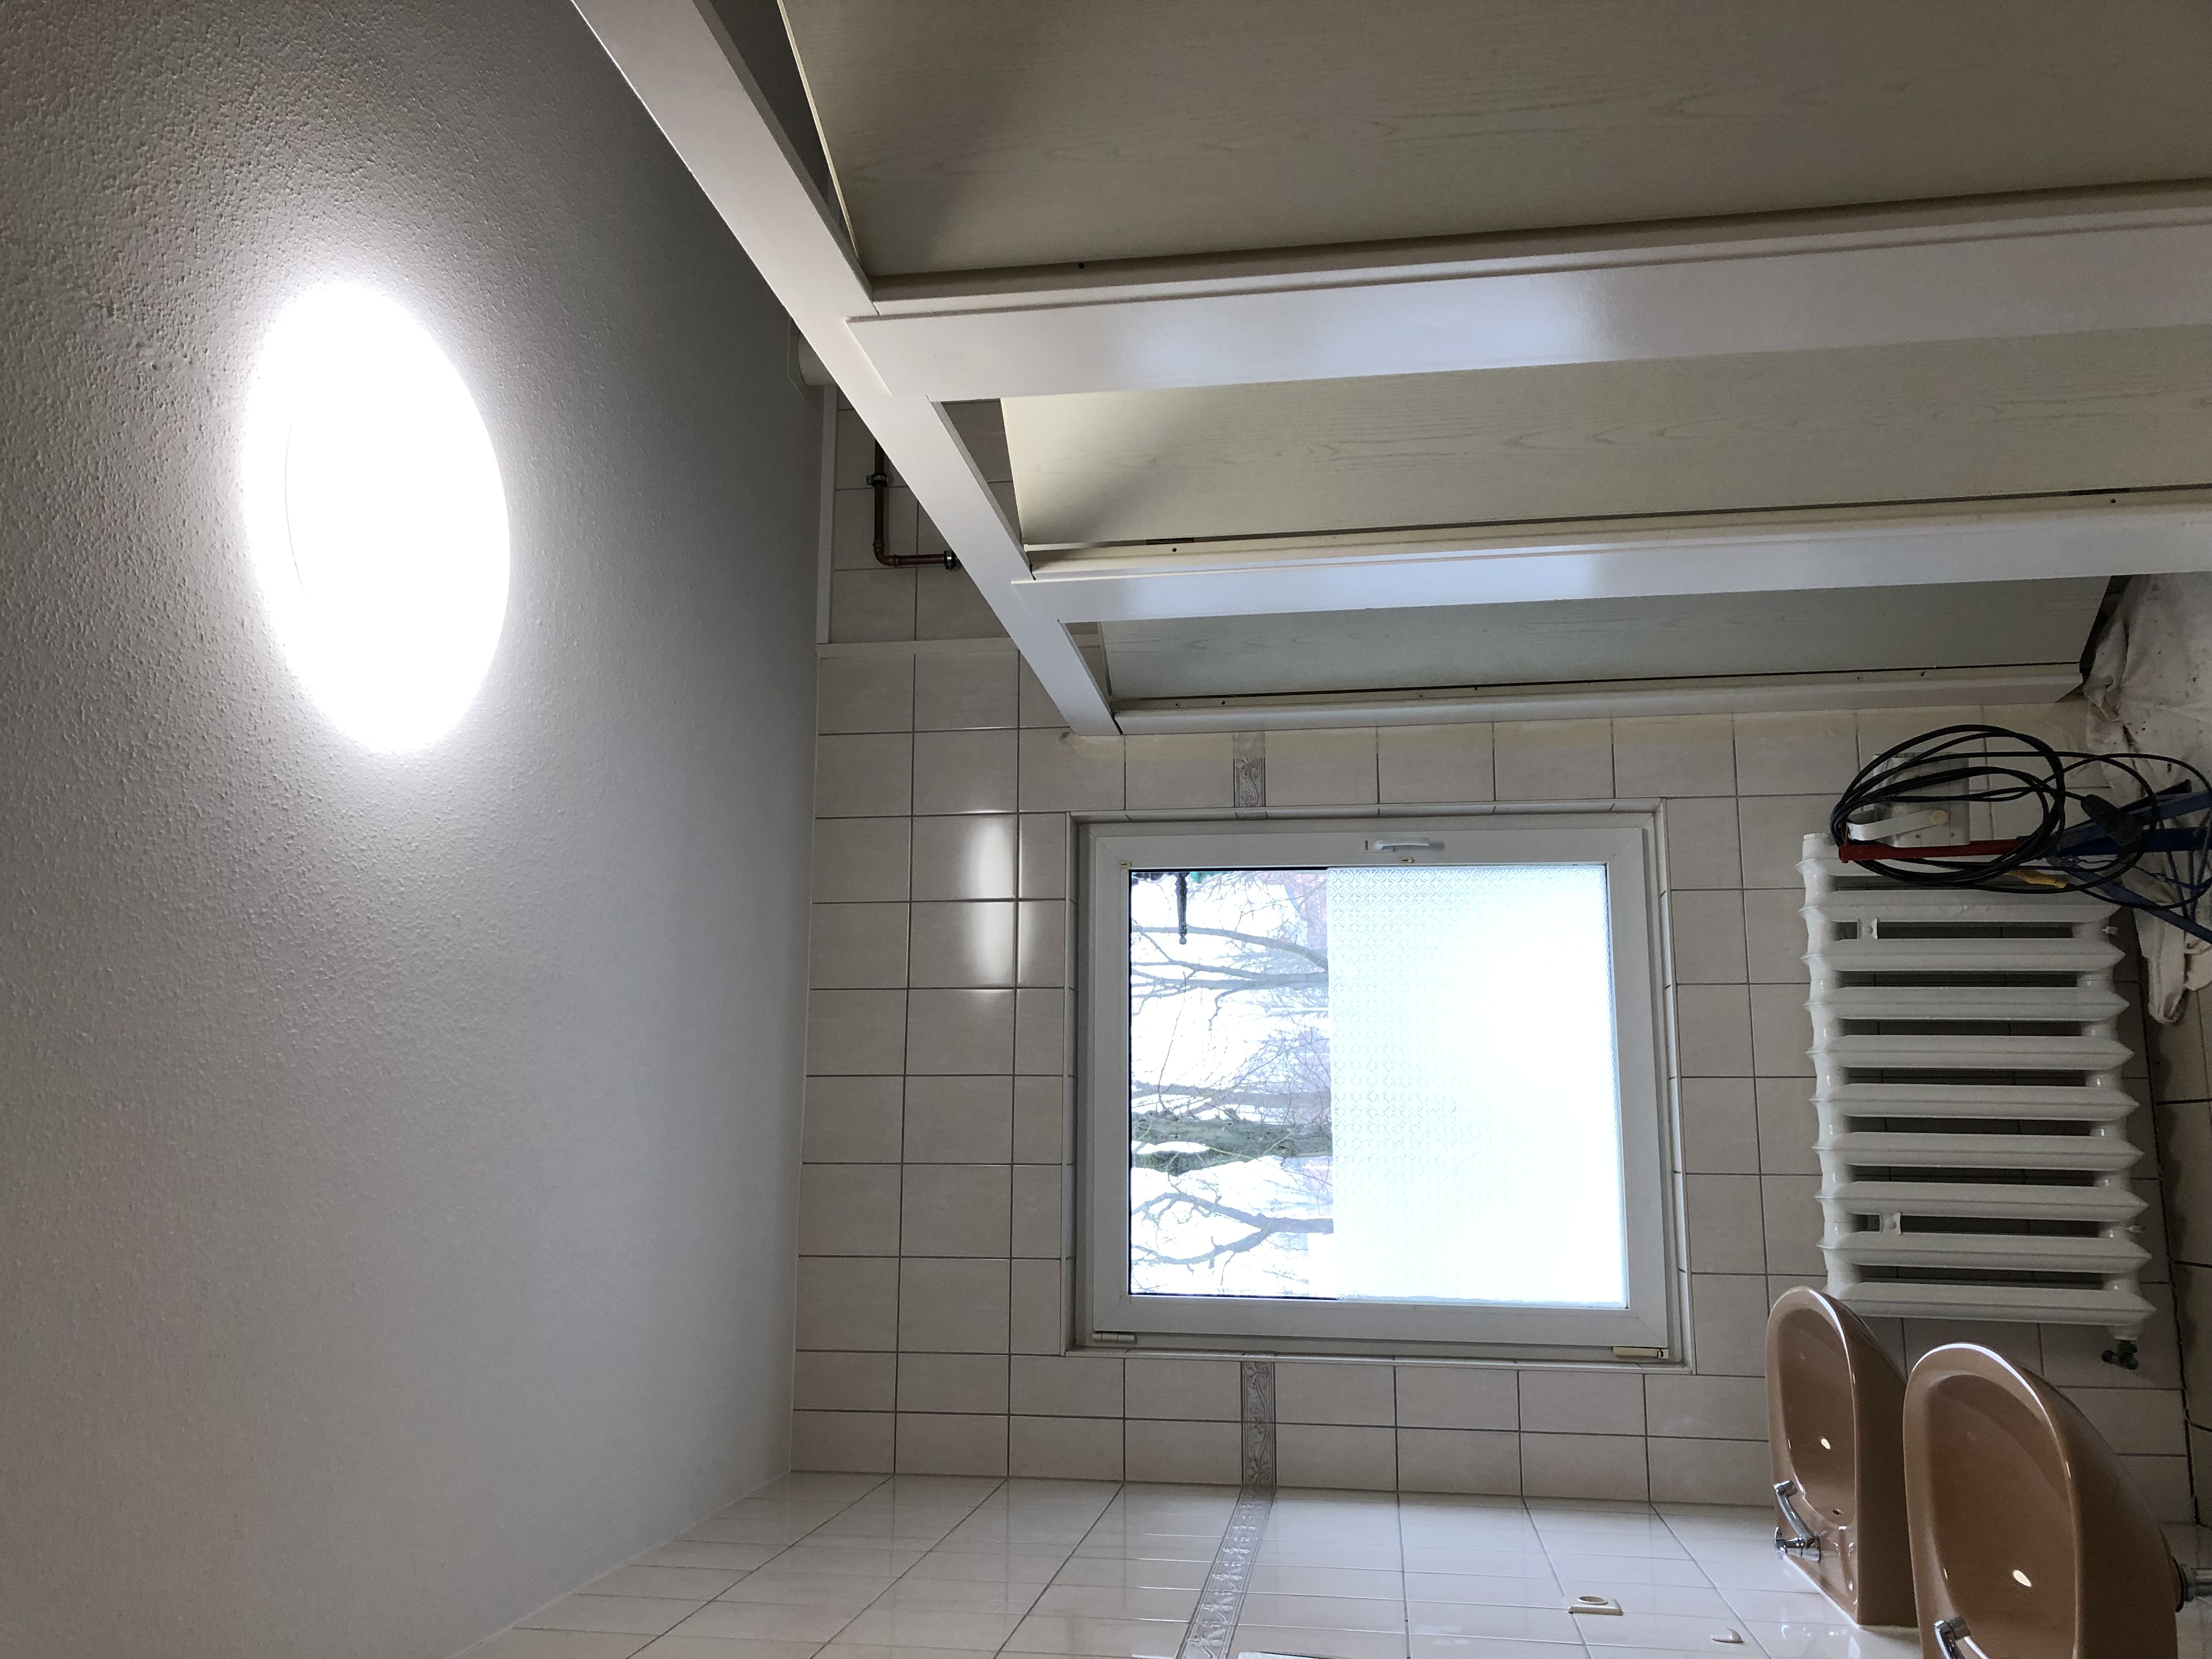 Sanierung WC-Anlagen&Garderobe im SH-01.02-02.02.2019  (15)